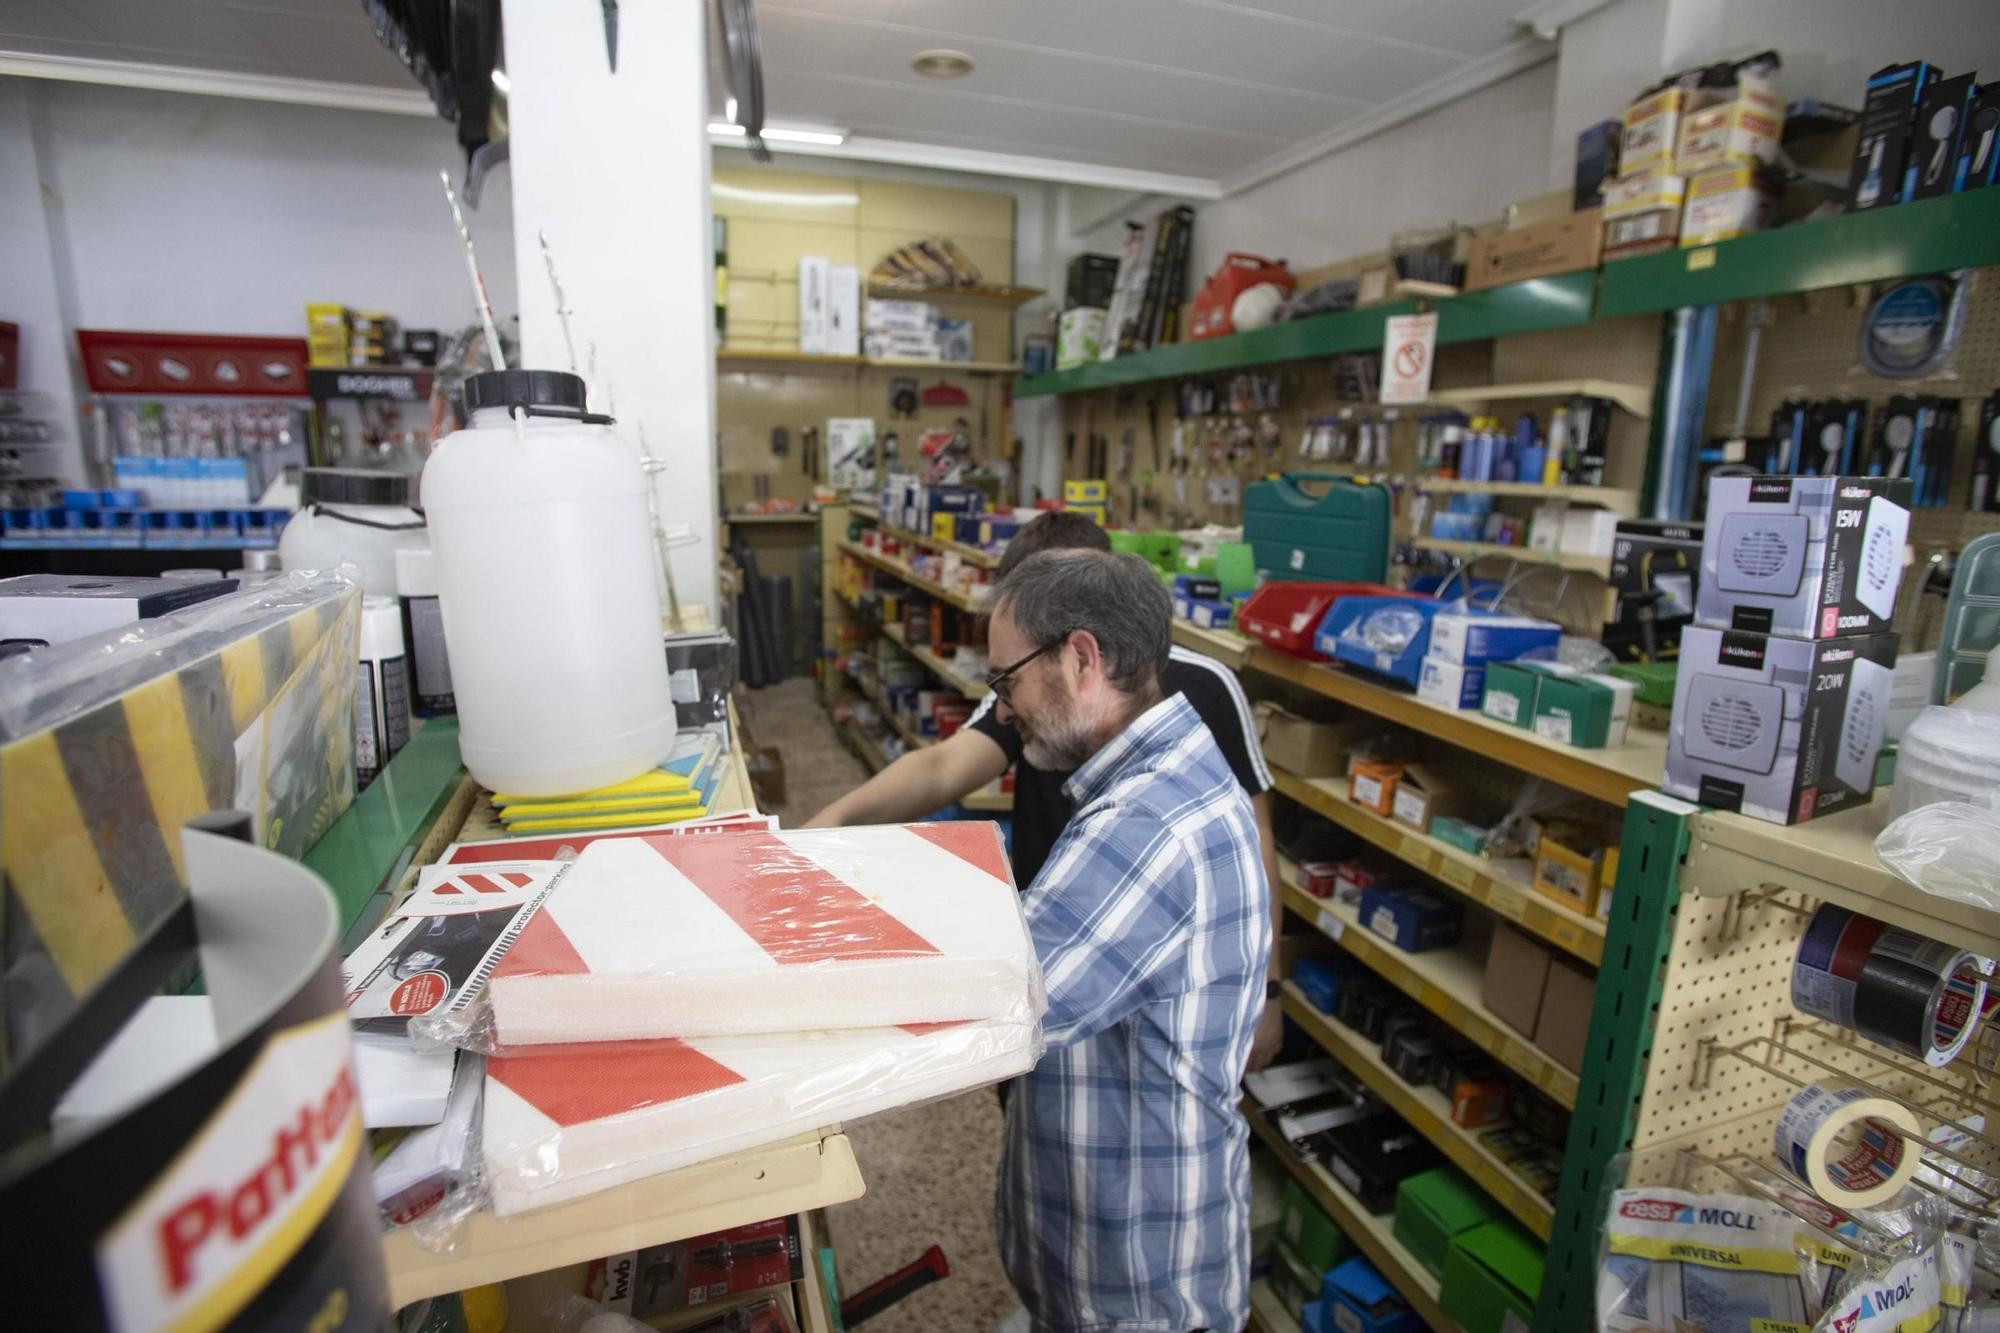 Otro comercio histórico en peligro en Xàtiva: se traspasa la Ferretería Blesa